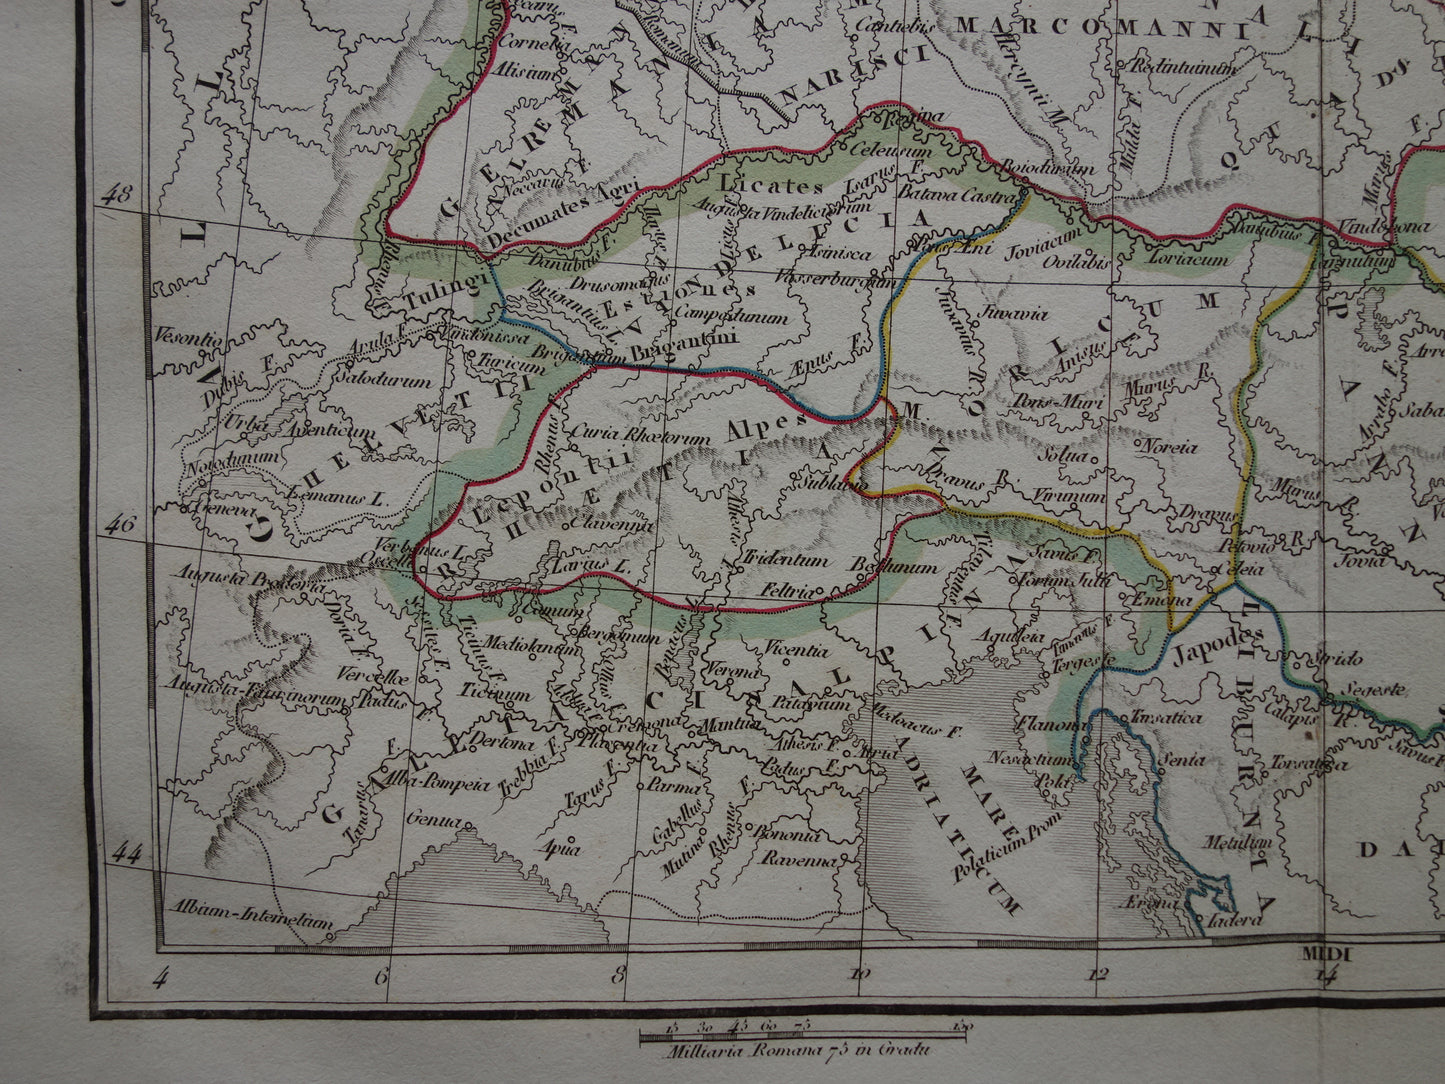 Duitsland oude historische landkaart van Germania in Romeinse Tijd - 1832 originele antieke kaart centraal Europa in oudheid